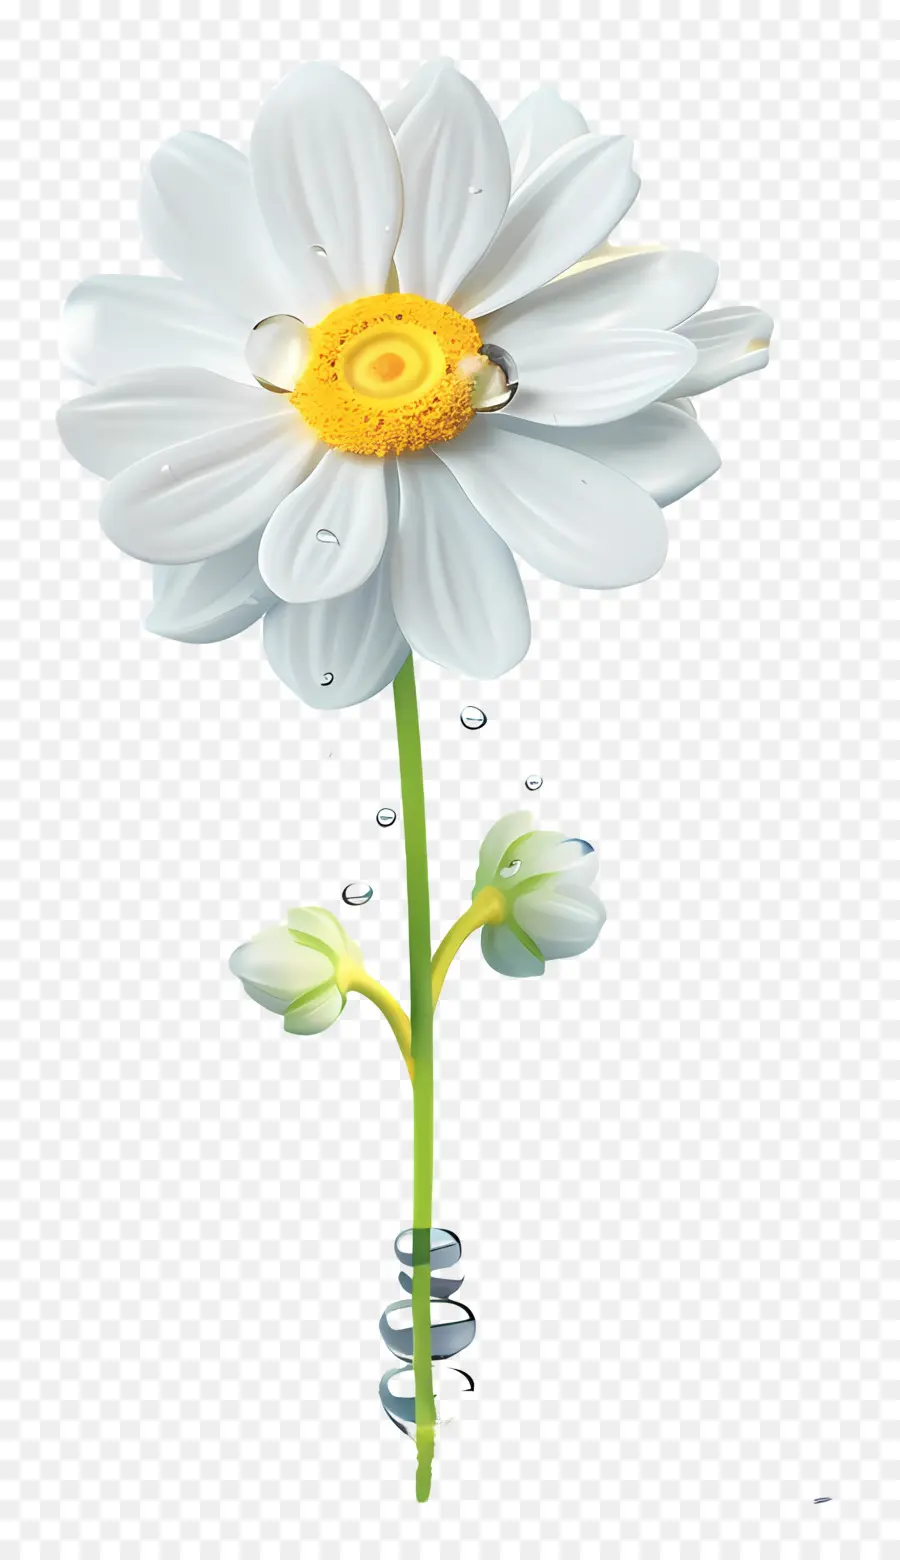 fiore bianco - Fiore bianco con gocce d'acqua sullo stelo